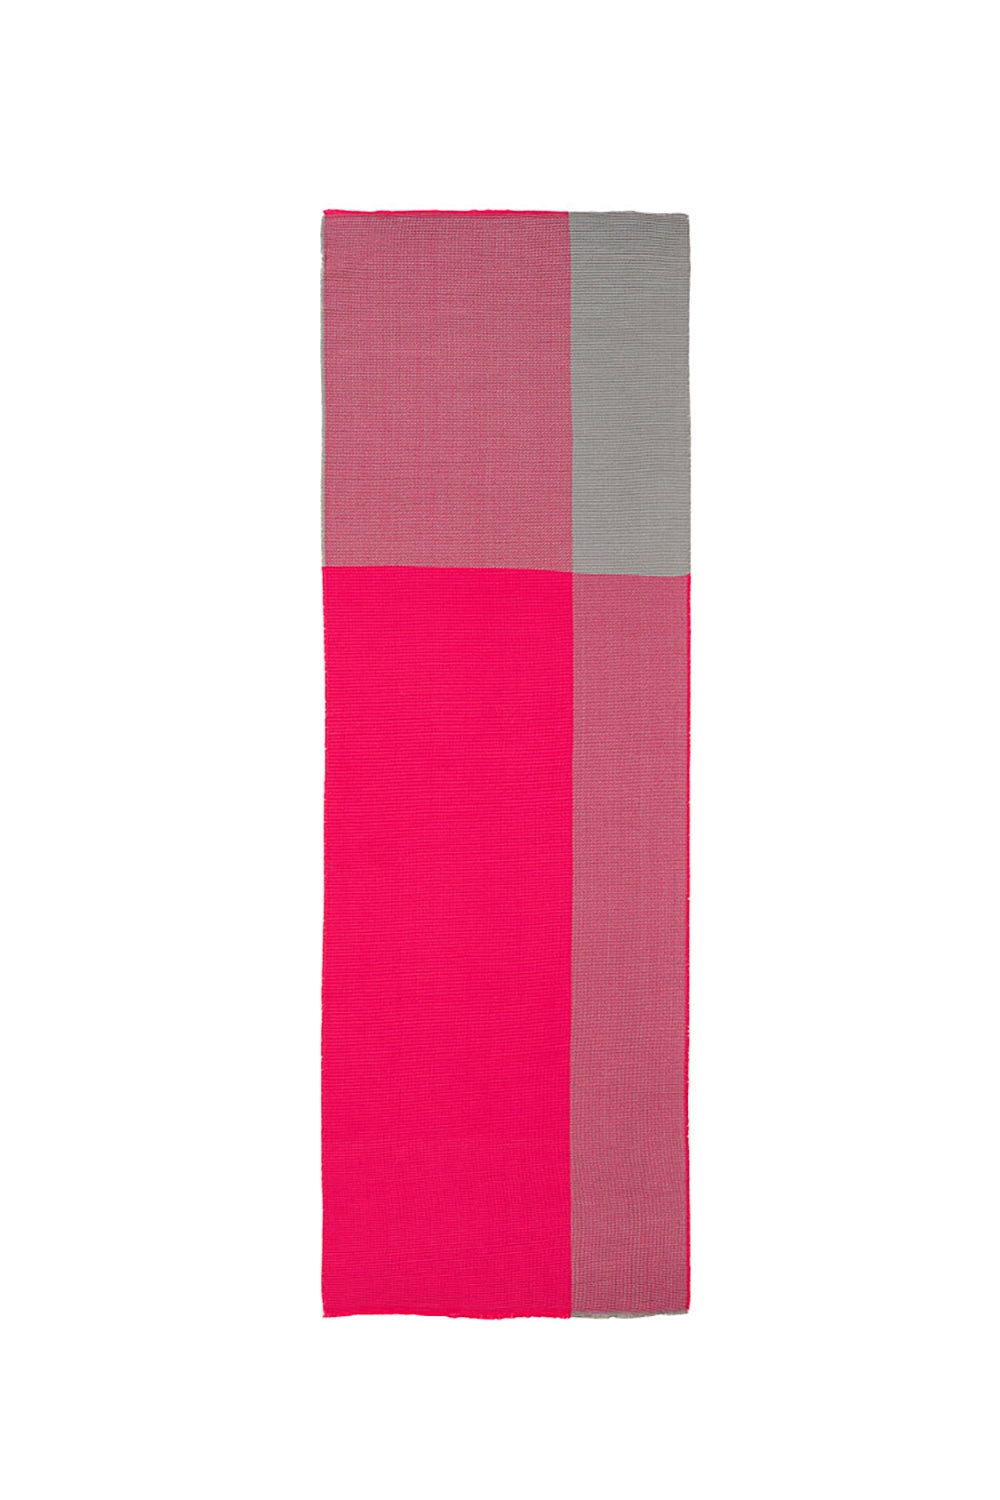 Dunne sjaal met gemengde breisels in roze tinten